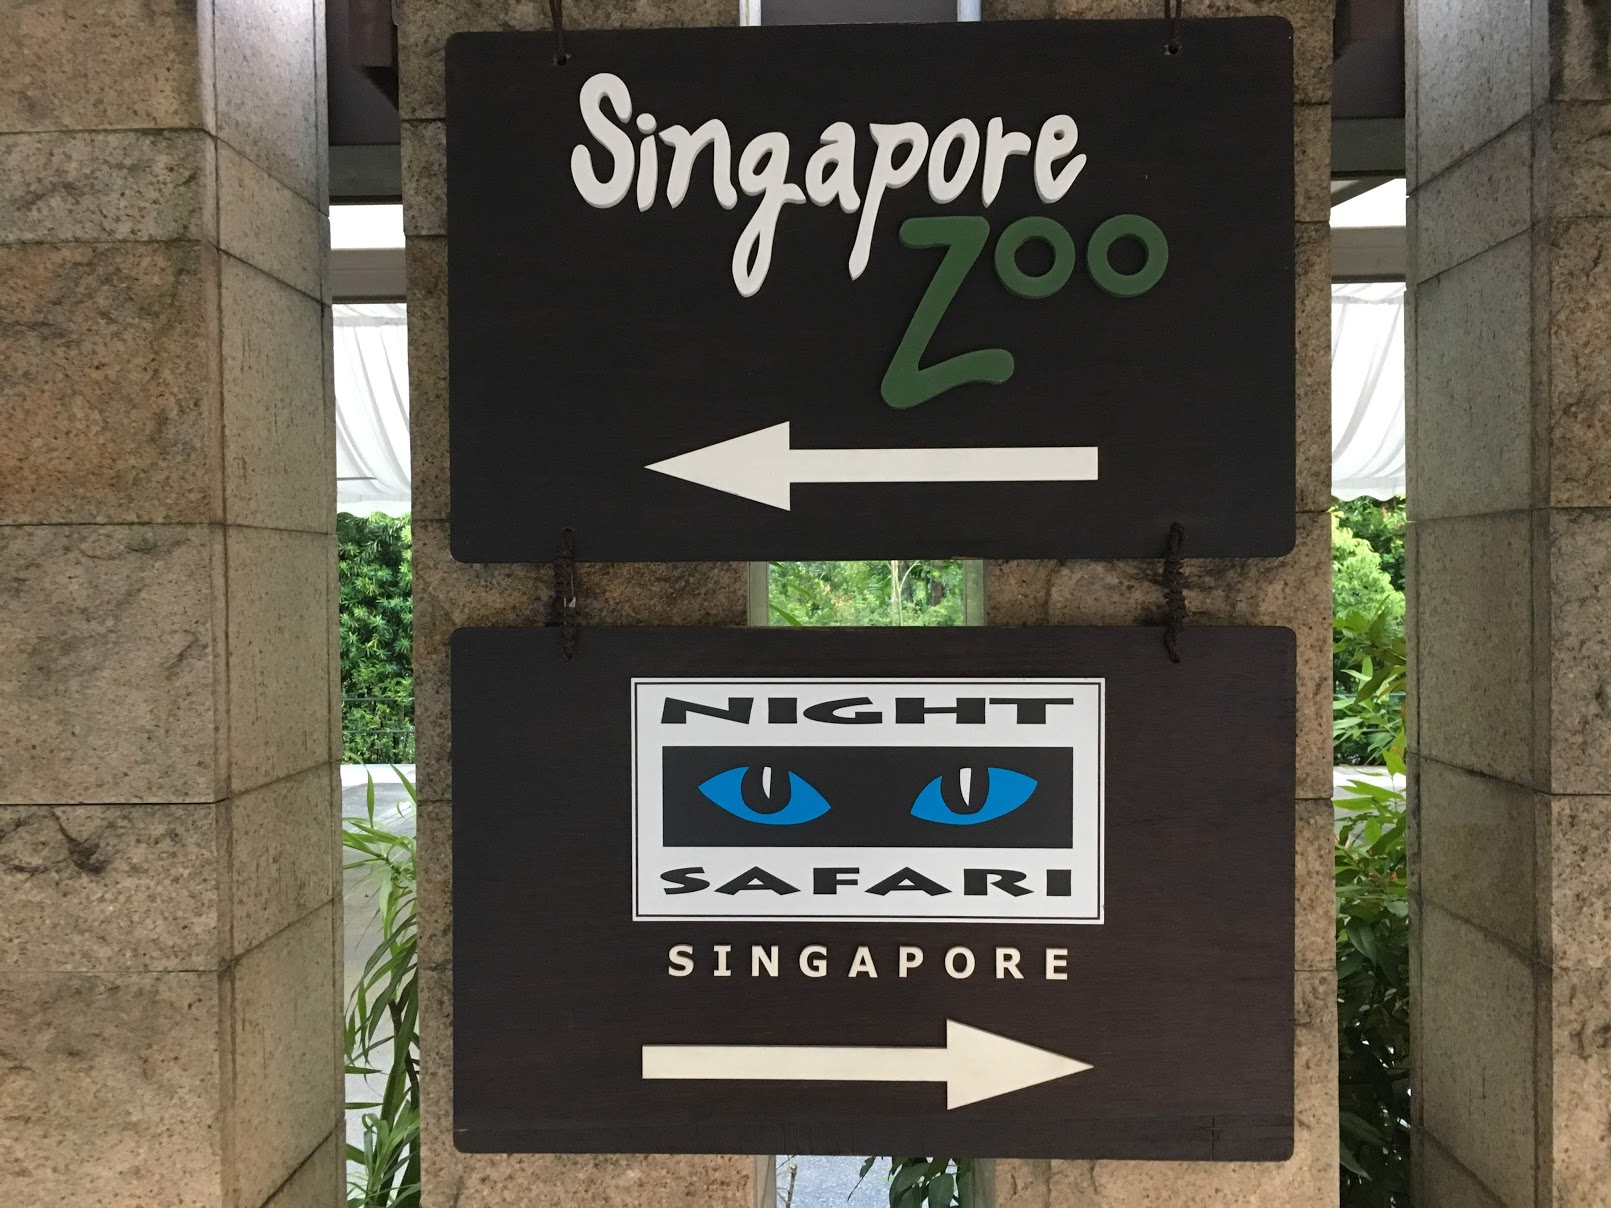 シンガポール動物園・ナイトサファリはセットチケットが断然お得！買い方や割引情報など